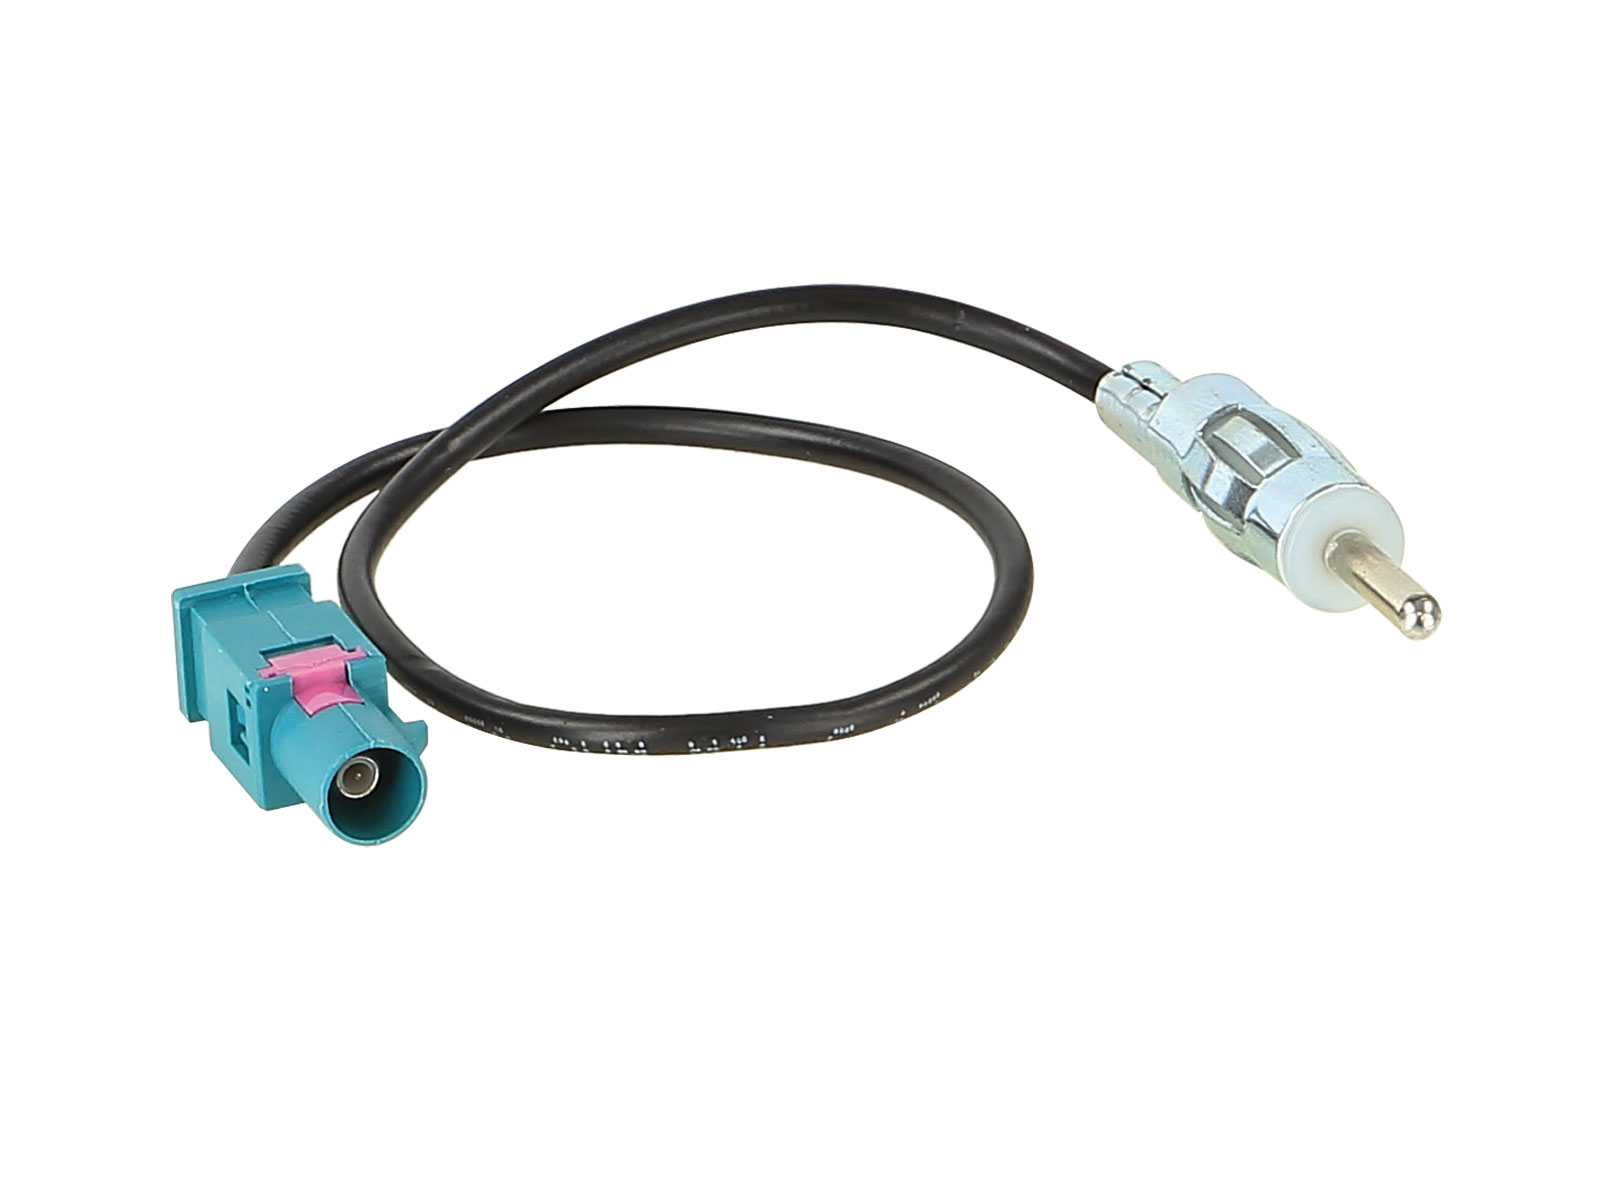 ACV Antennenadapter kompatibel mit Audi ab Bj. 2002 adaptiert von Fakra (m) auf DIN (m)